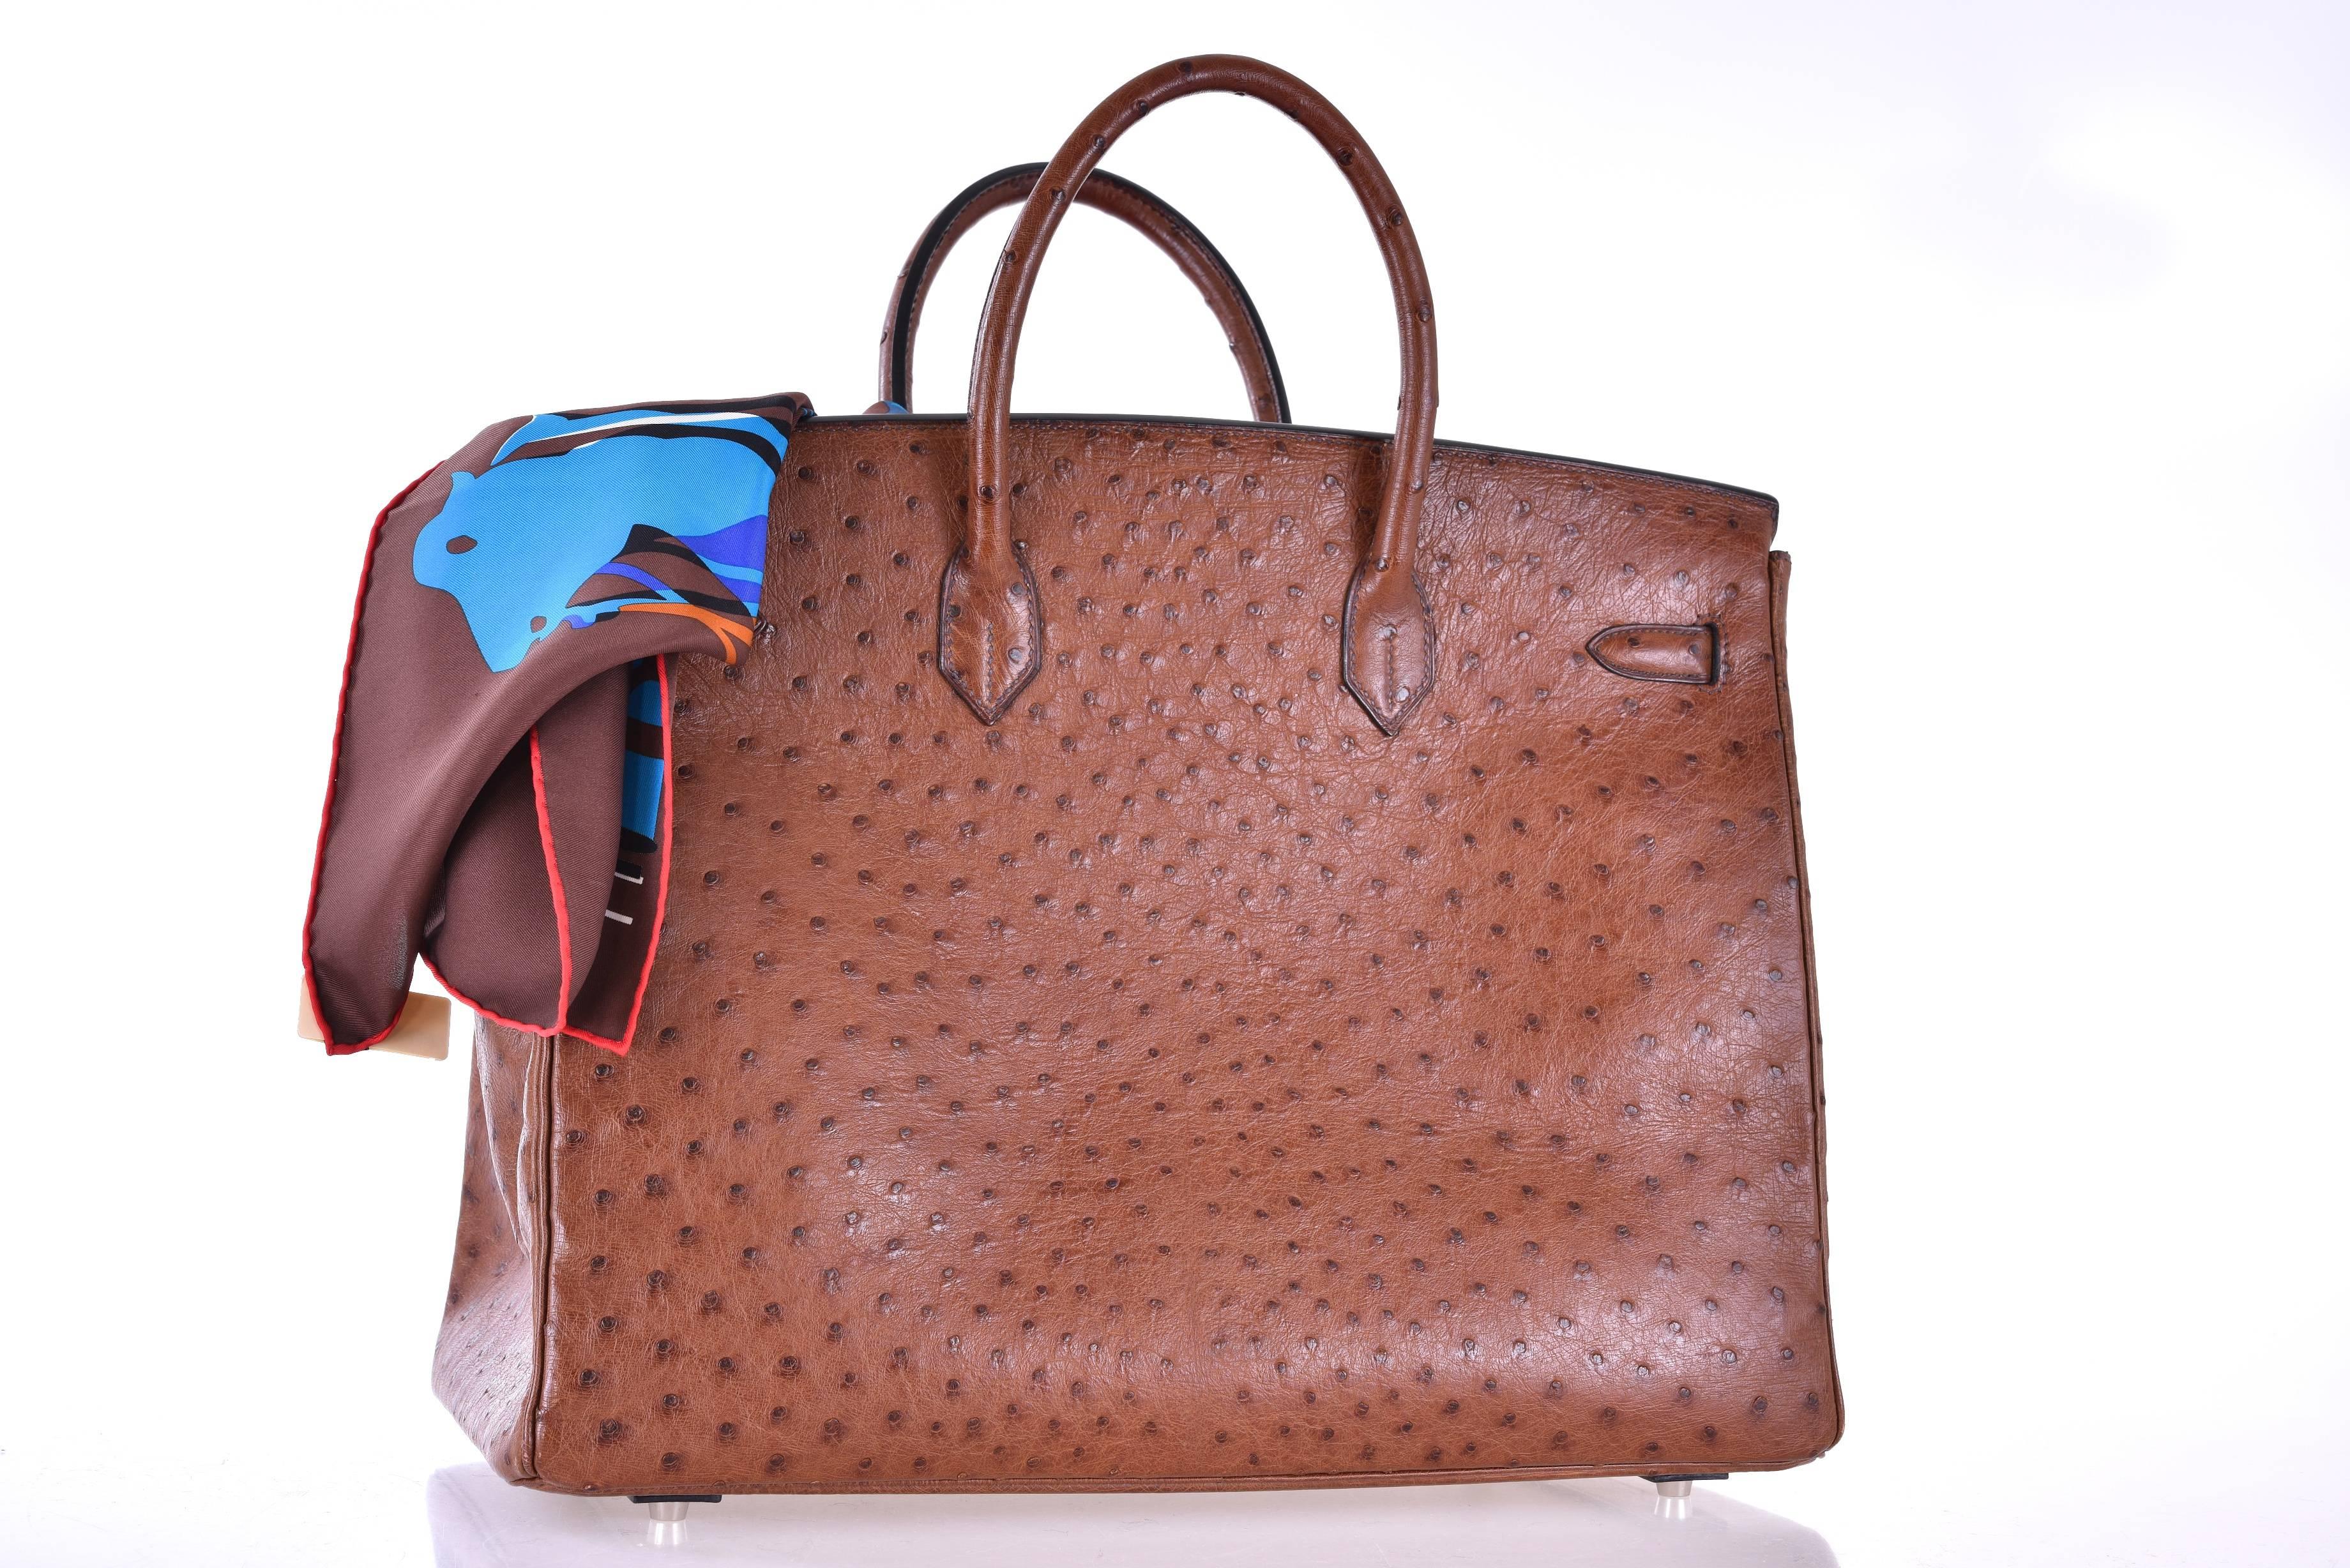 Excellent Condition
Hermes 40cm Noisette Ostrich Birkin Bag with Palladium Hardware
15.5